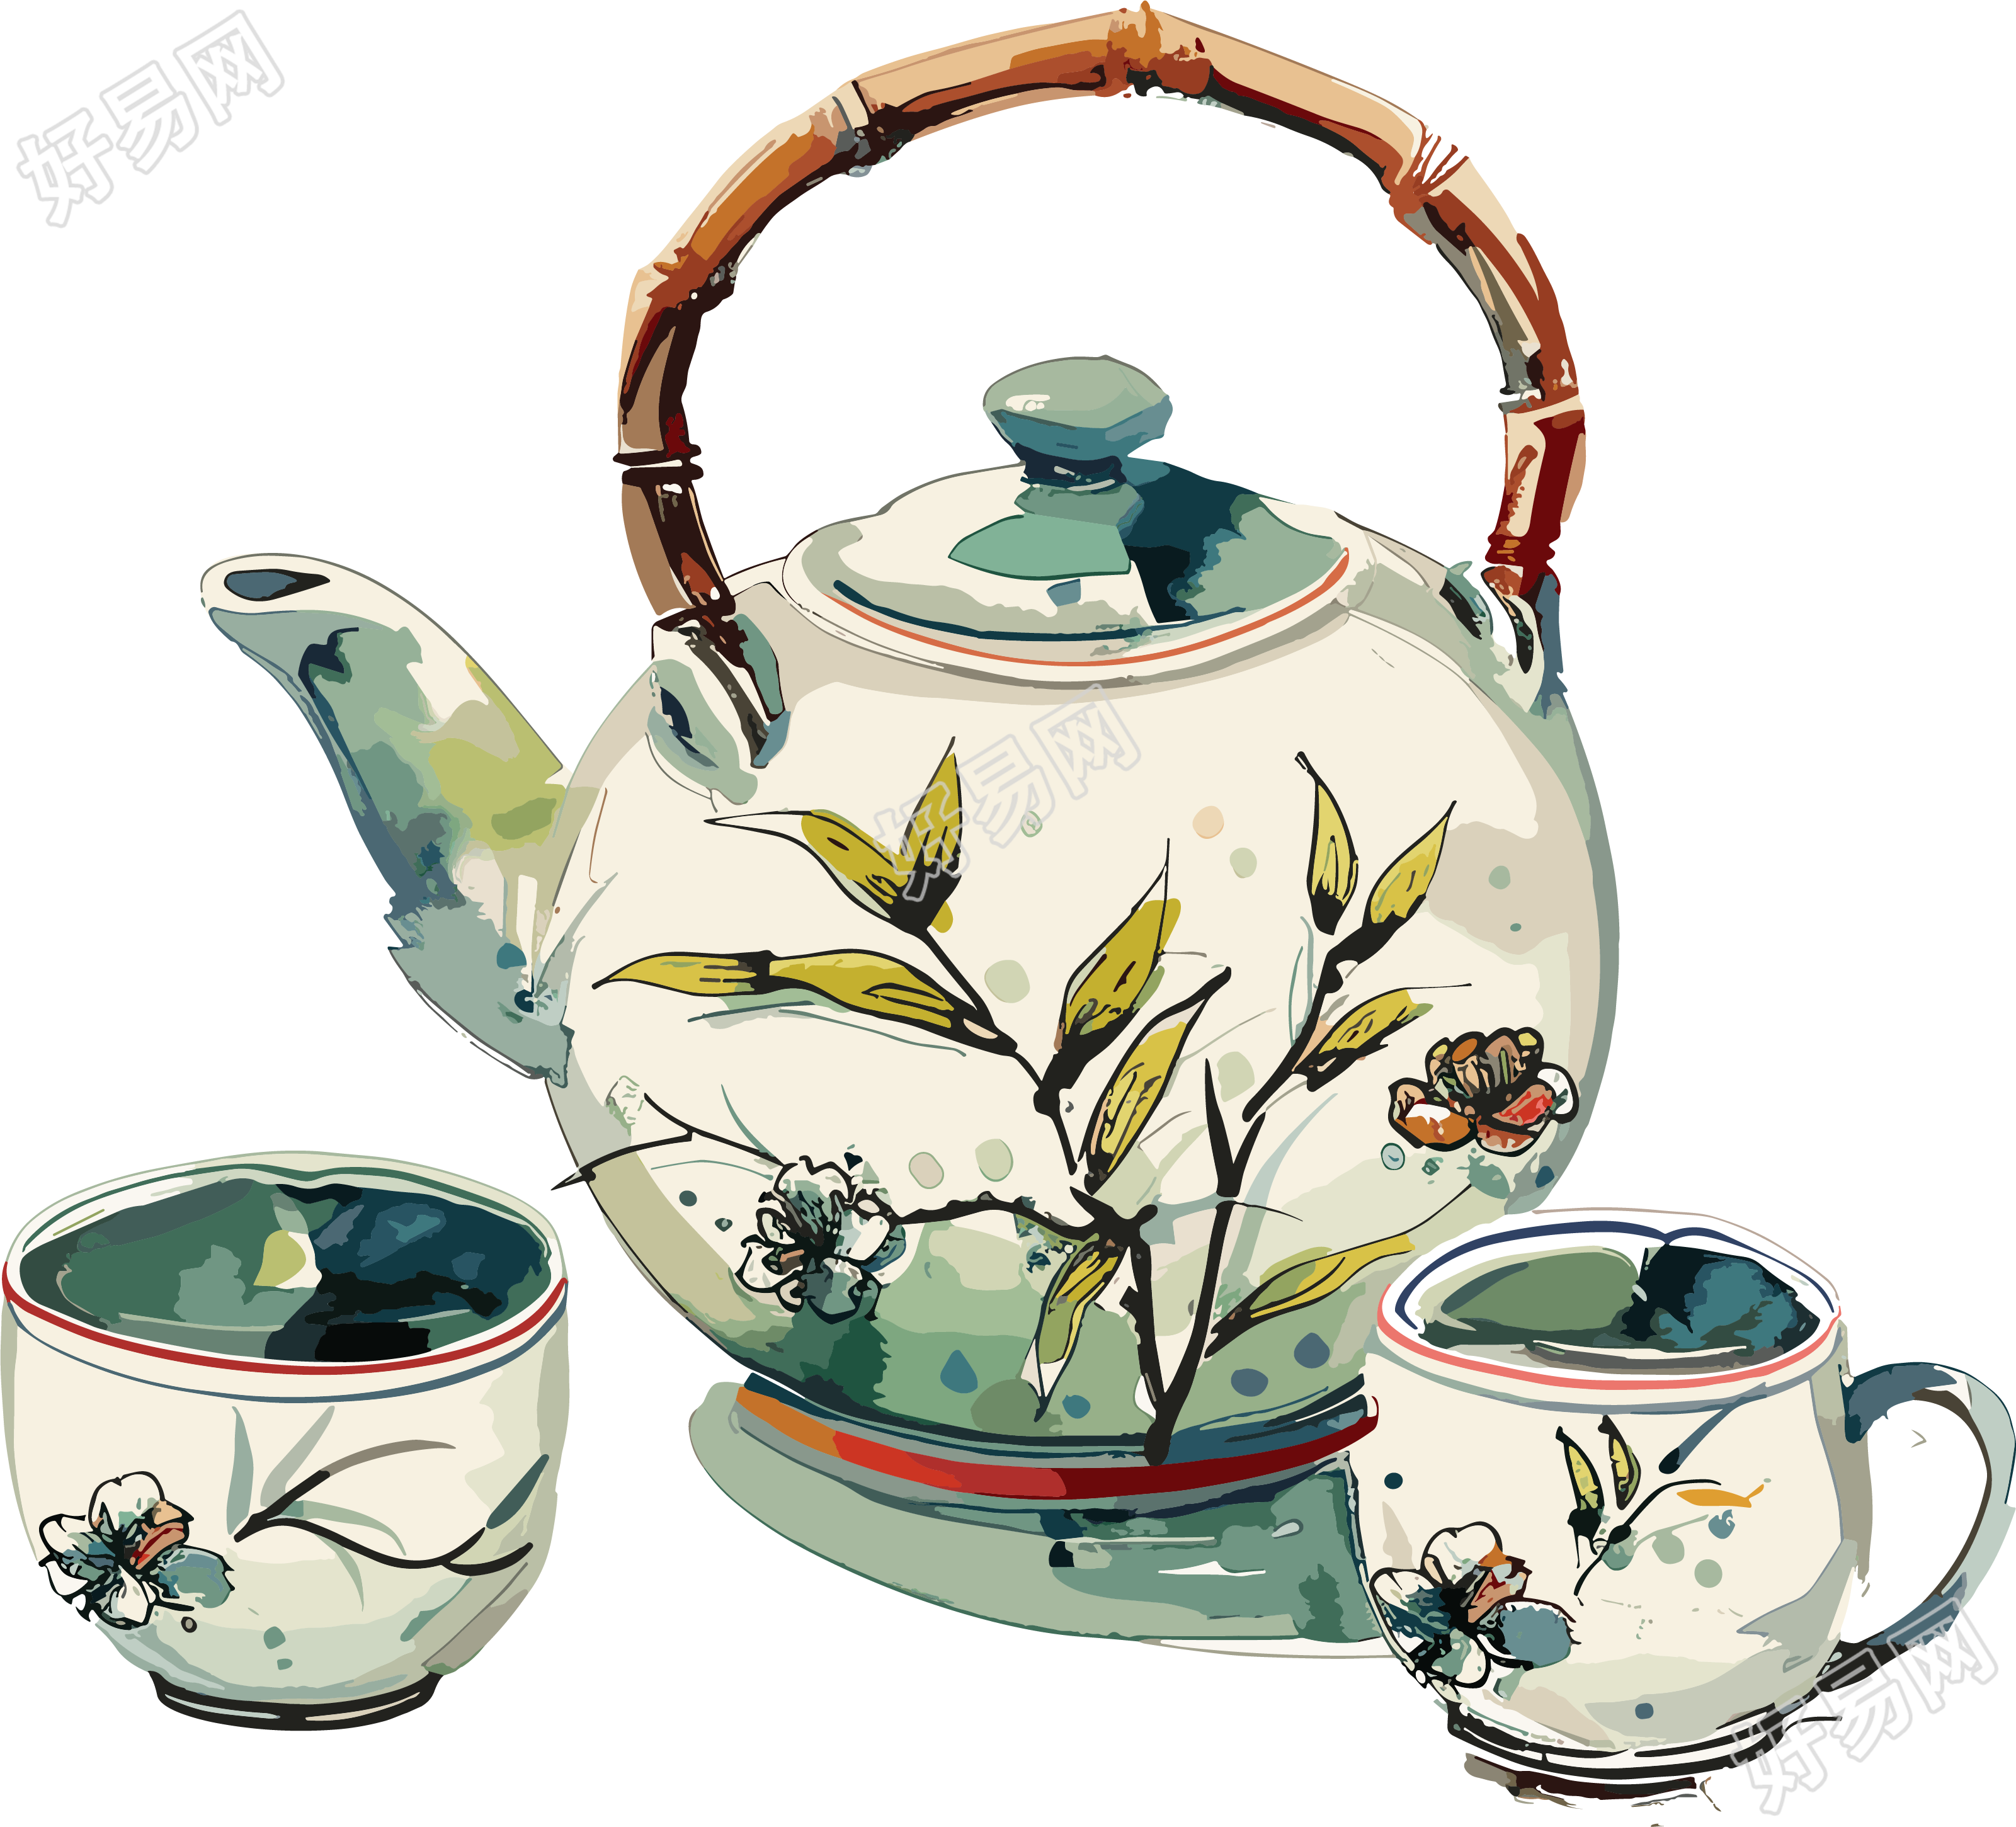 中式茶壶简绘插画